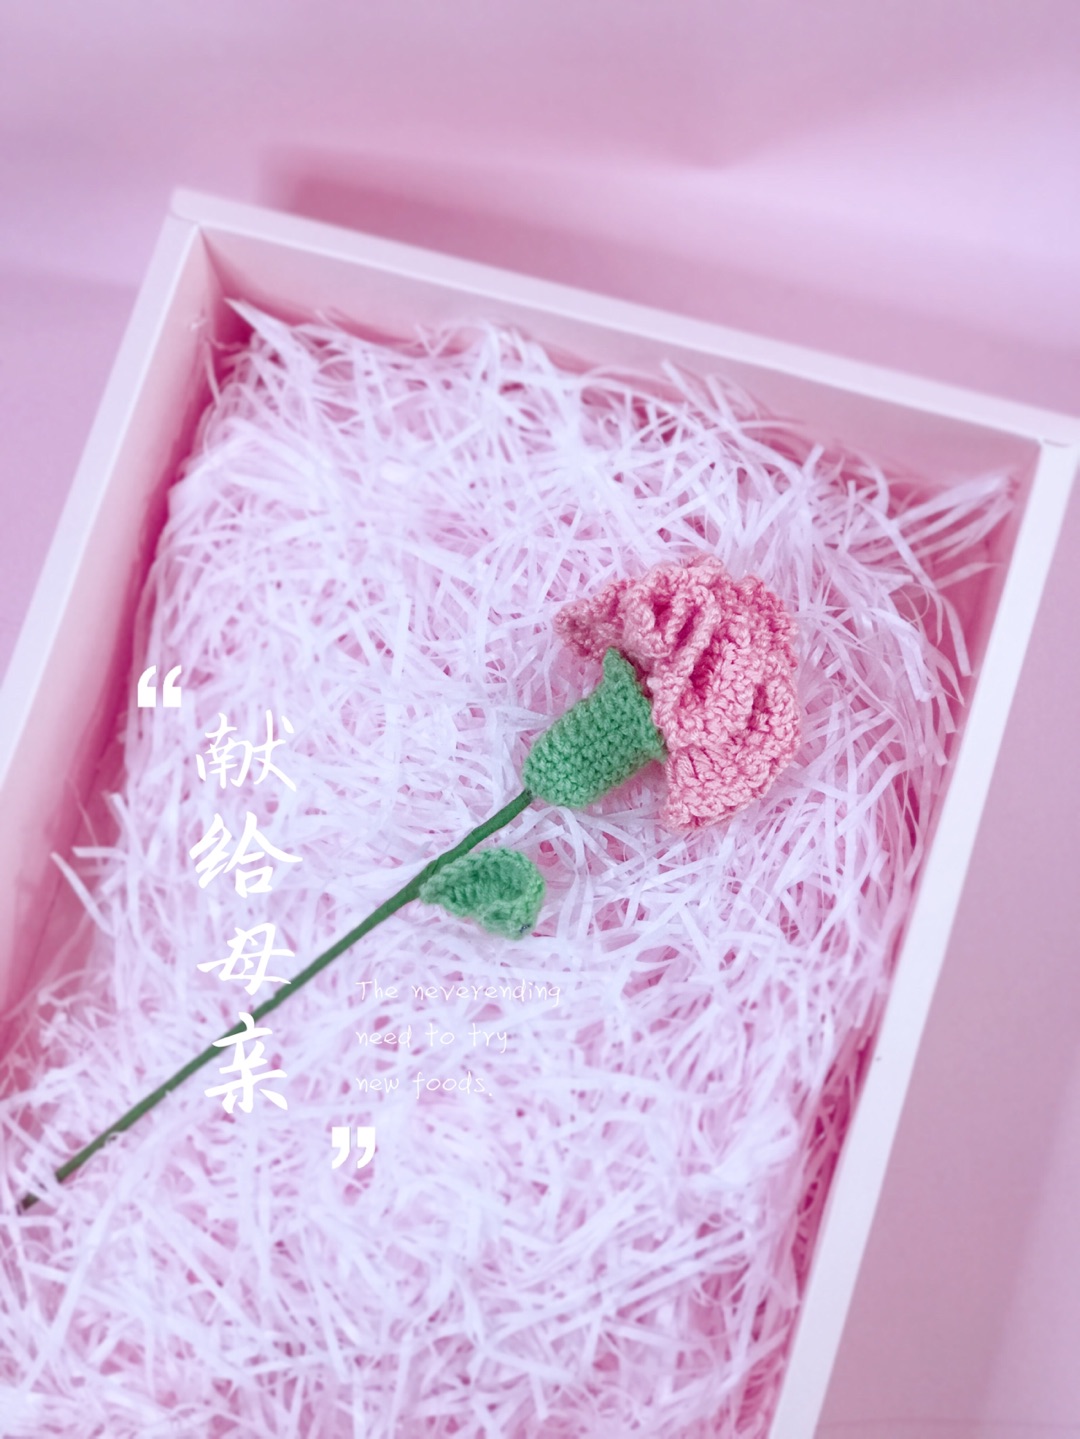 👩🏻母亲节献礼：🧶毛线编织🌷永不凋谢的康乃馨，送给亲爱的妈妈❗️
📣图解在最后一张图片哦！📣